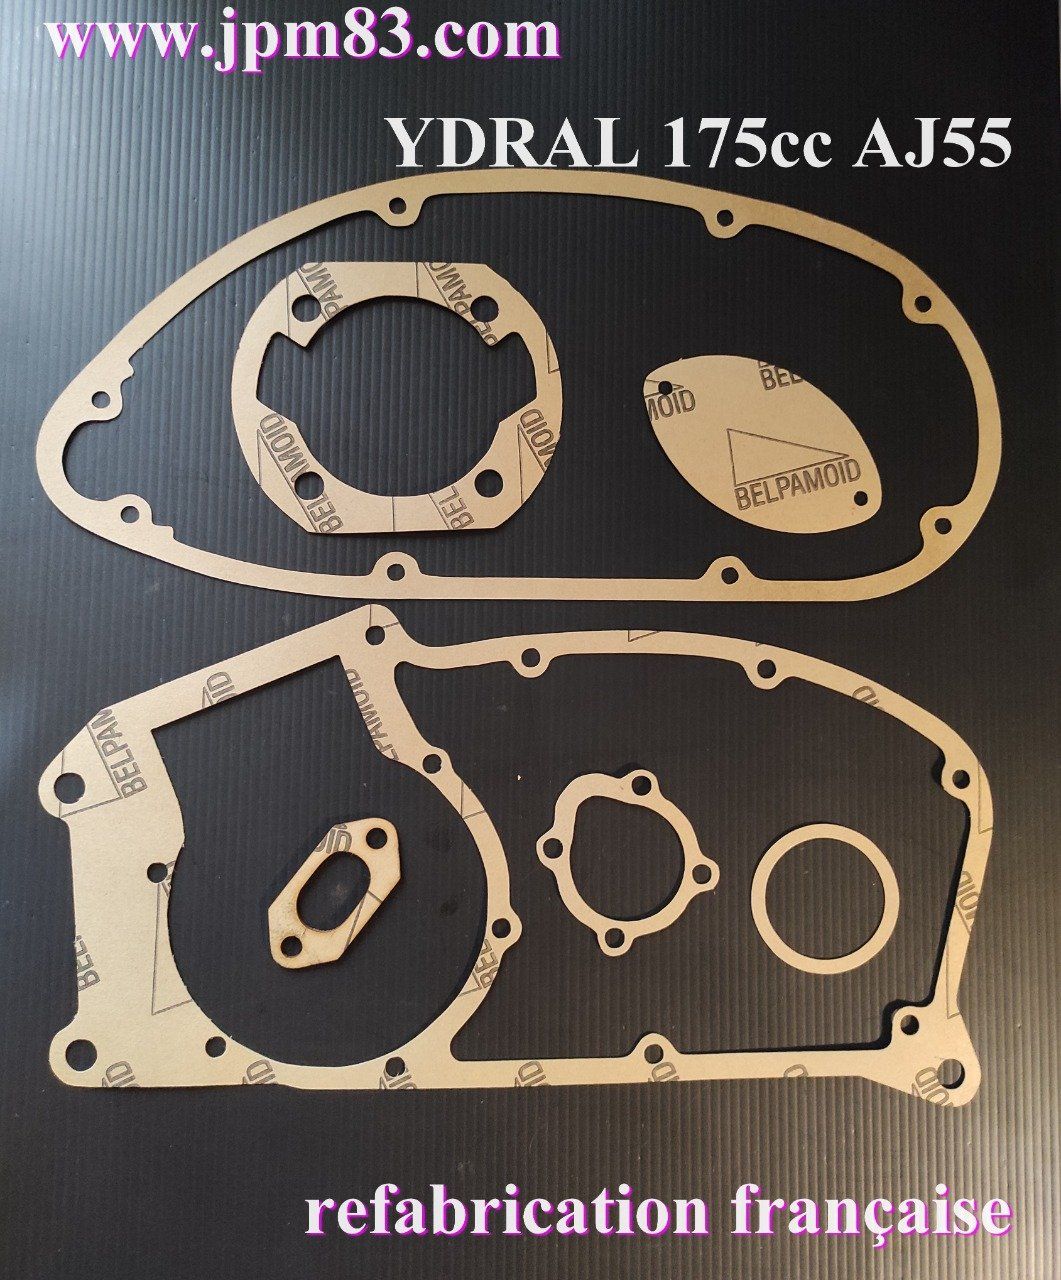 YDRAL 175 type AJ55 